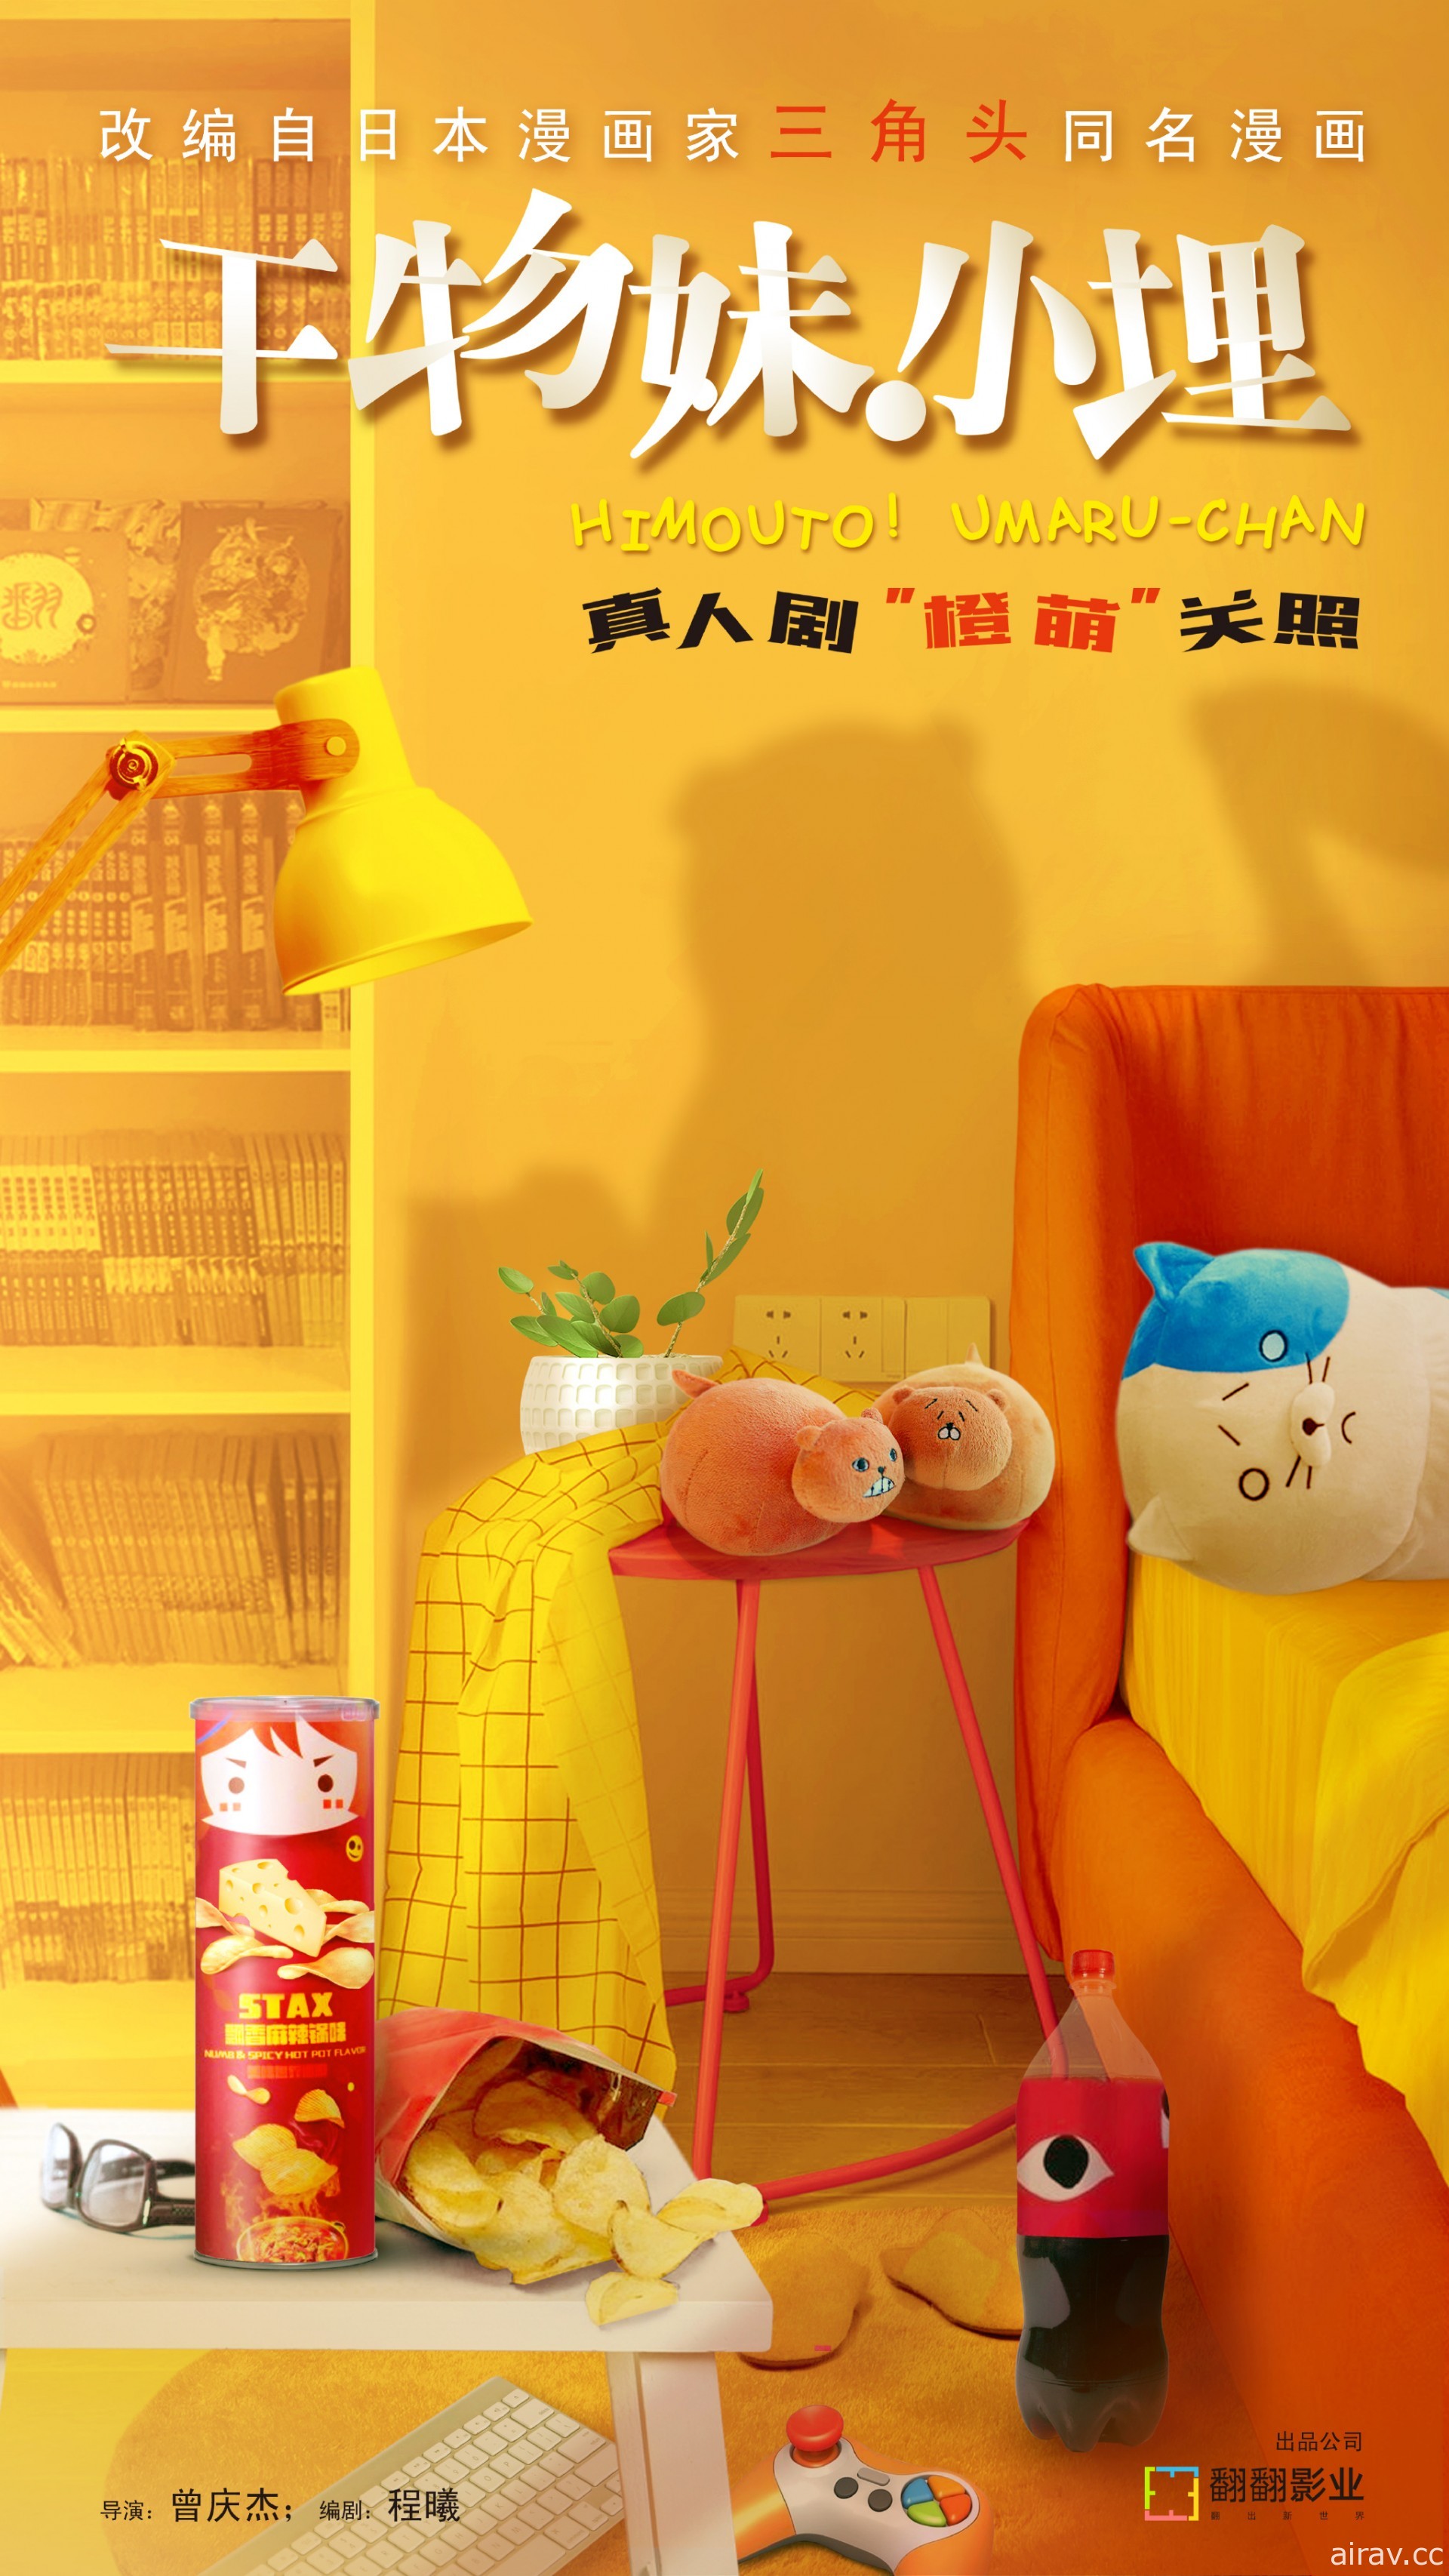 《我家有個魚乾妹》將由中國杭州翻翻影業推出真人劇 前導海報公開